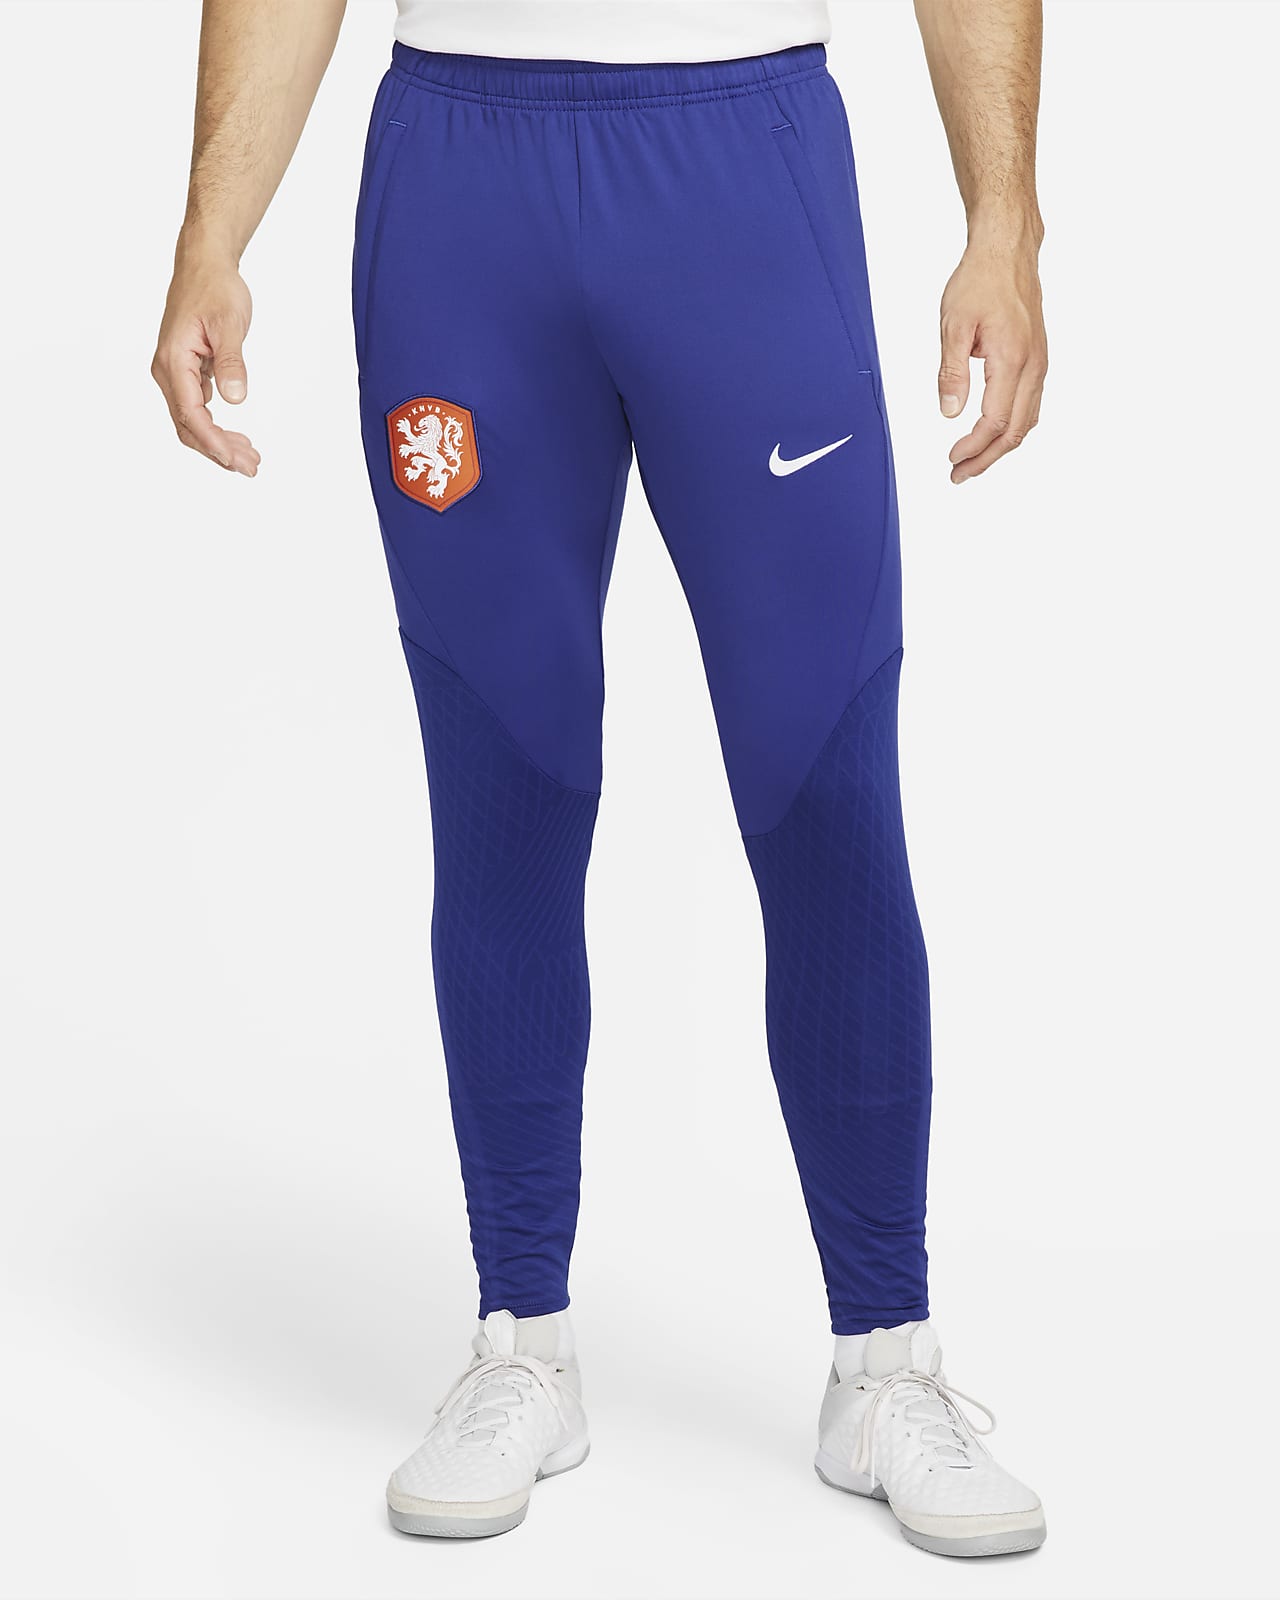 prefacio maravilloso Expulsar a Pantalones de fútbol Nike Dri-FIT para hombre Países Bajos Strike. Nike.com